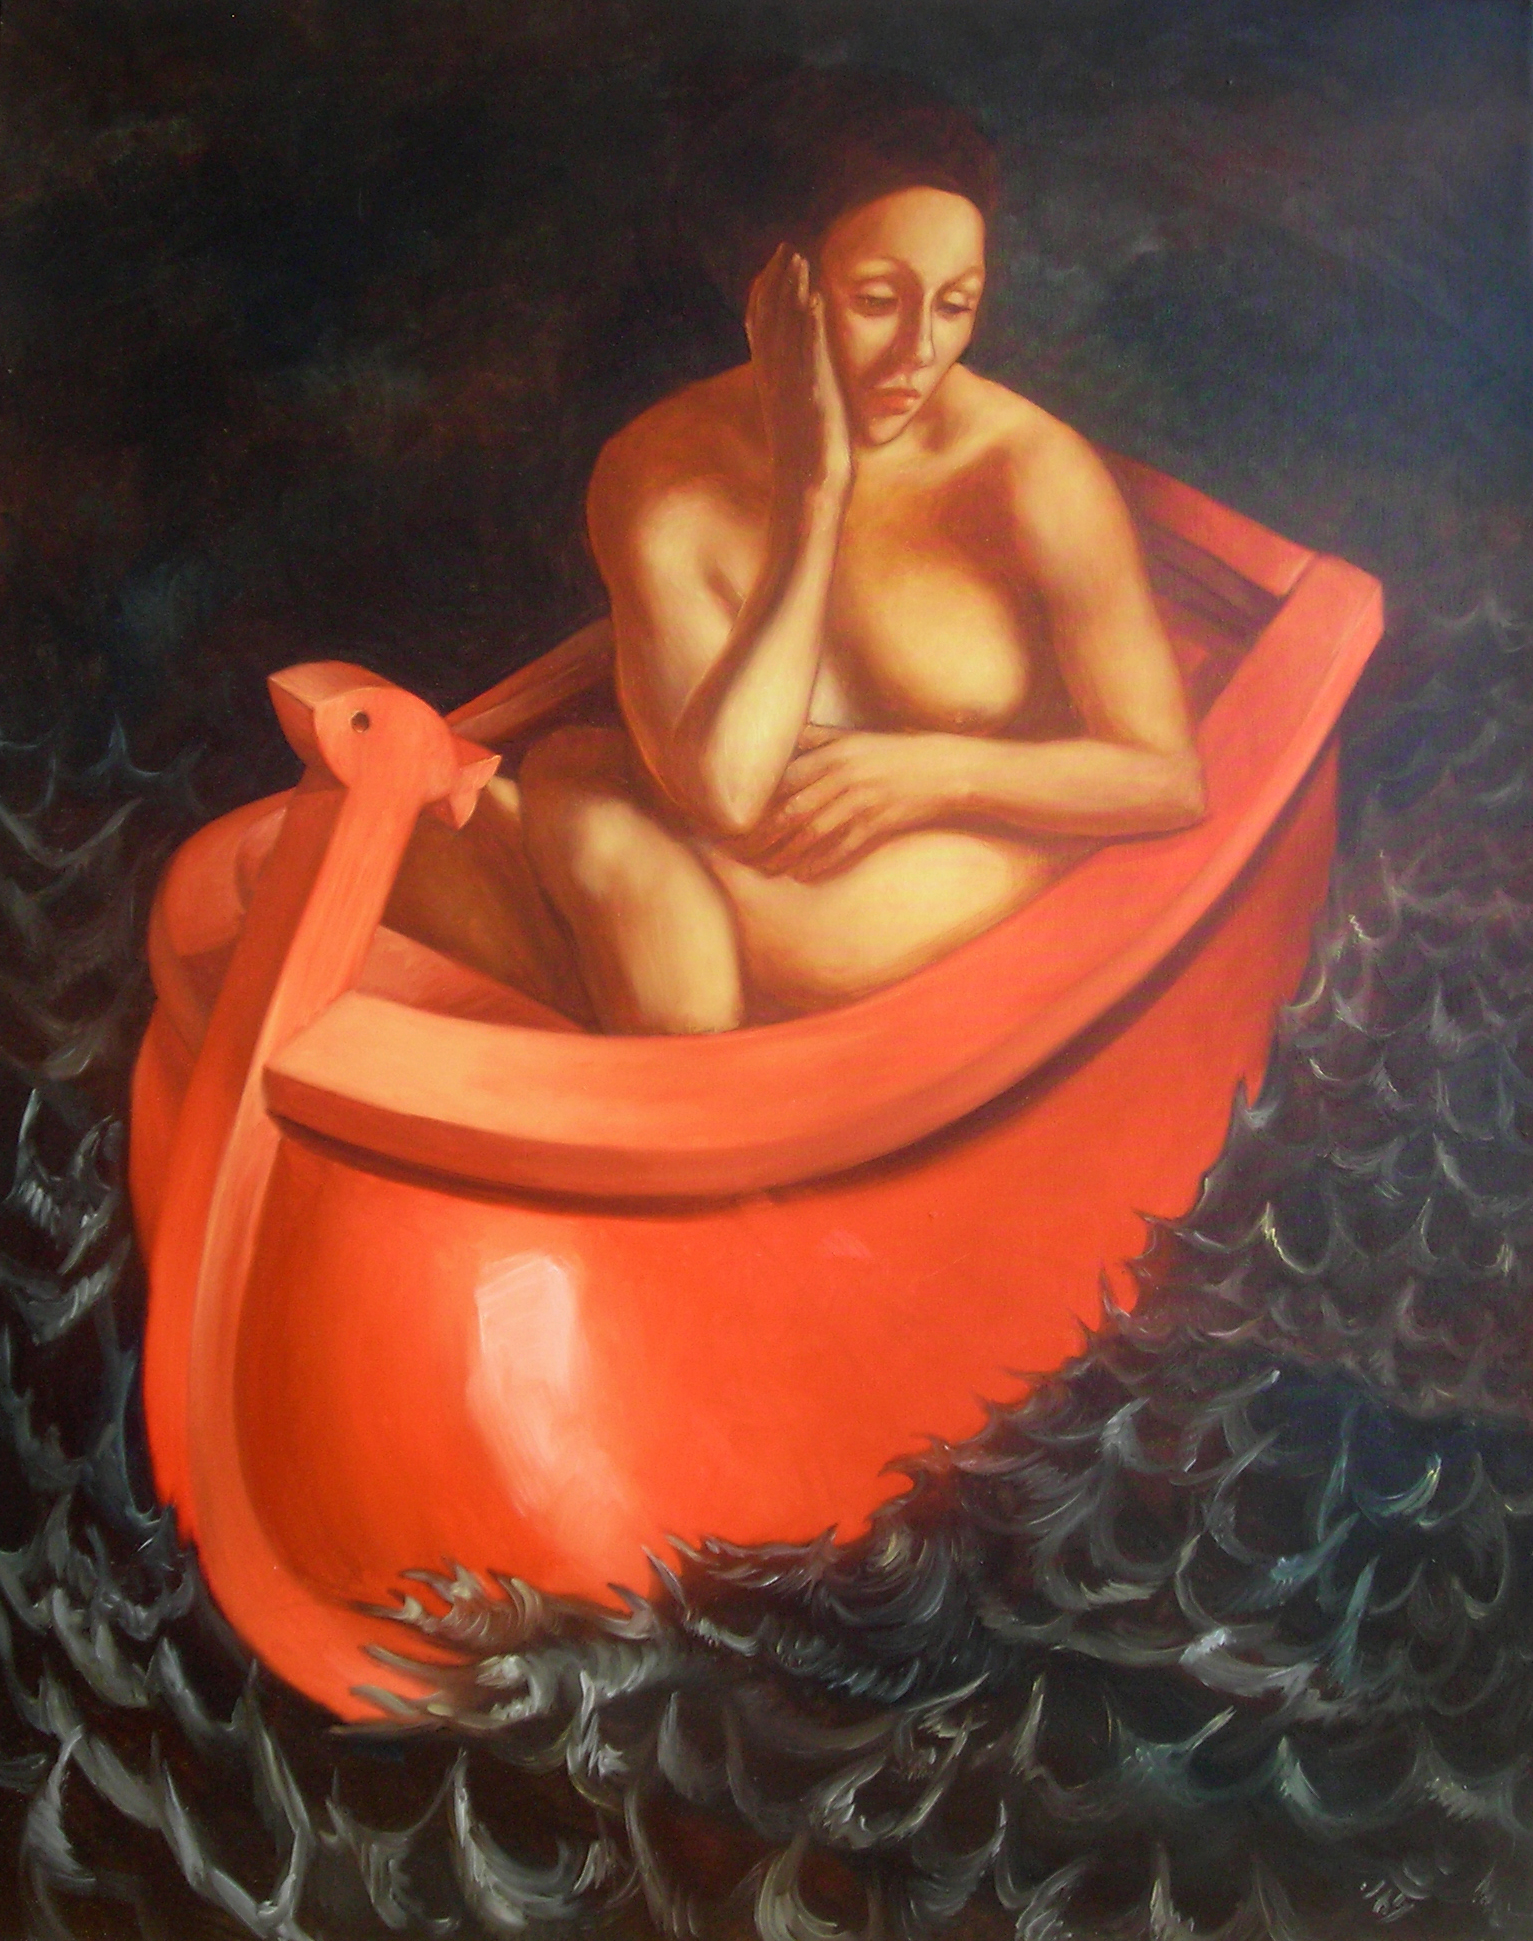 Une femme nue dans une très petite barque rouge. Elle est assise un peu de travers, posant sa tête dans sa main appuyée sur son genou. Elle regarde dans le vide, vers le bas.. La proue de la barque est ornée de la sculpture d'un poisson stylisé. La mer est faite de petites vagues vert foncé pointues qui tendent vers le ciel noir.